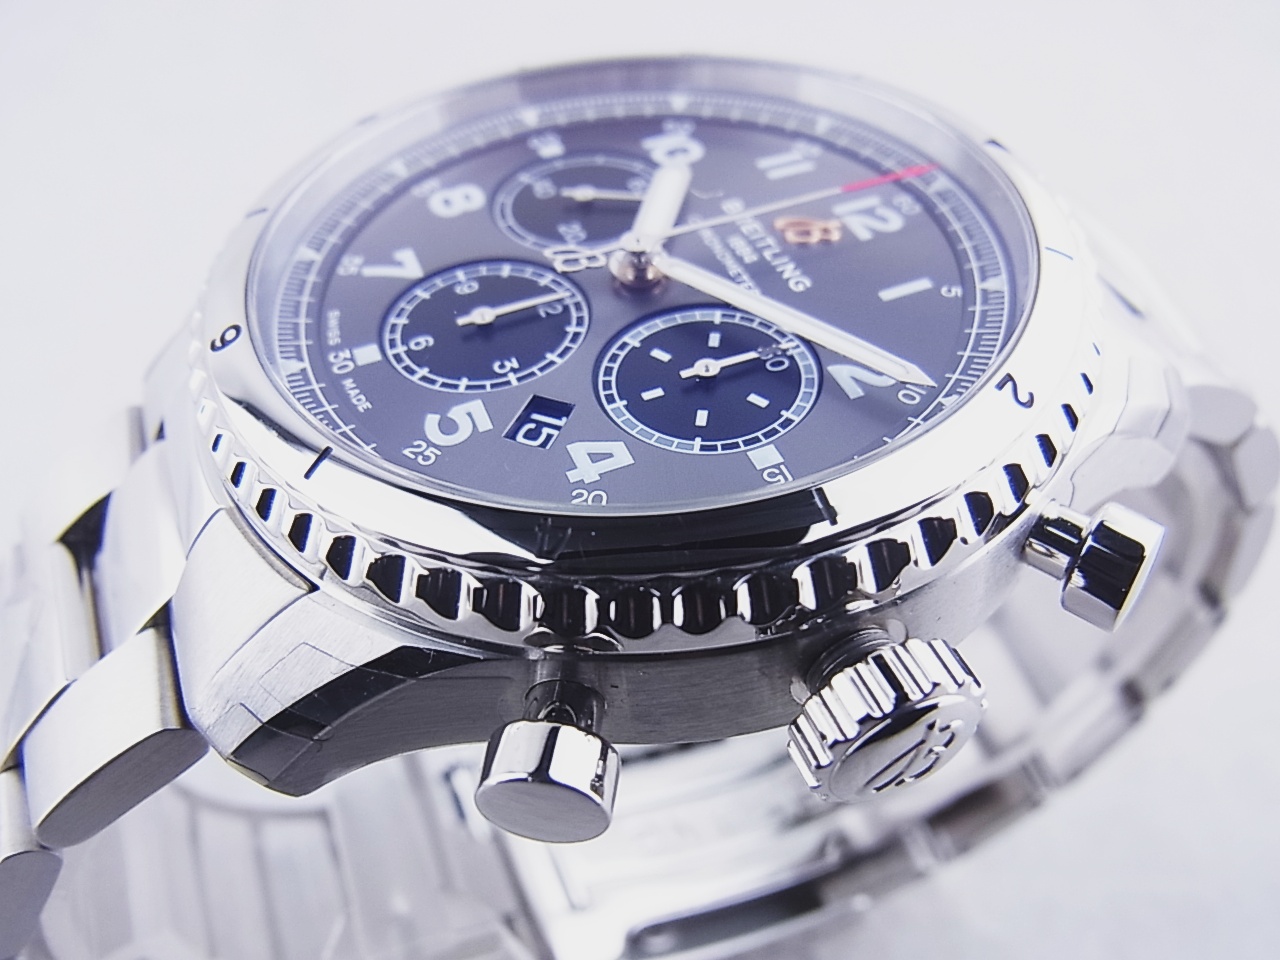 アビエーター8 B01 メンズ 腕時計 自動巻き SS レザー シルバー ブラック ブルー文字盤 裏スケ